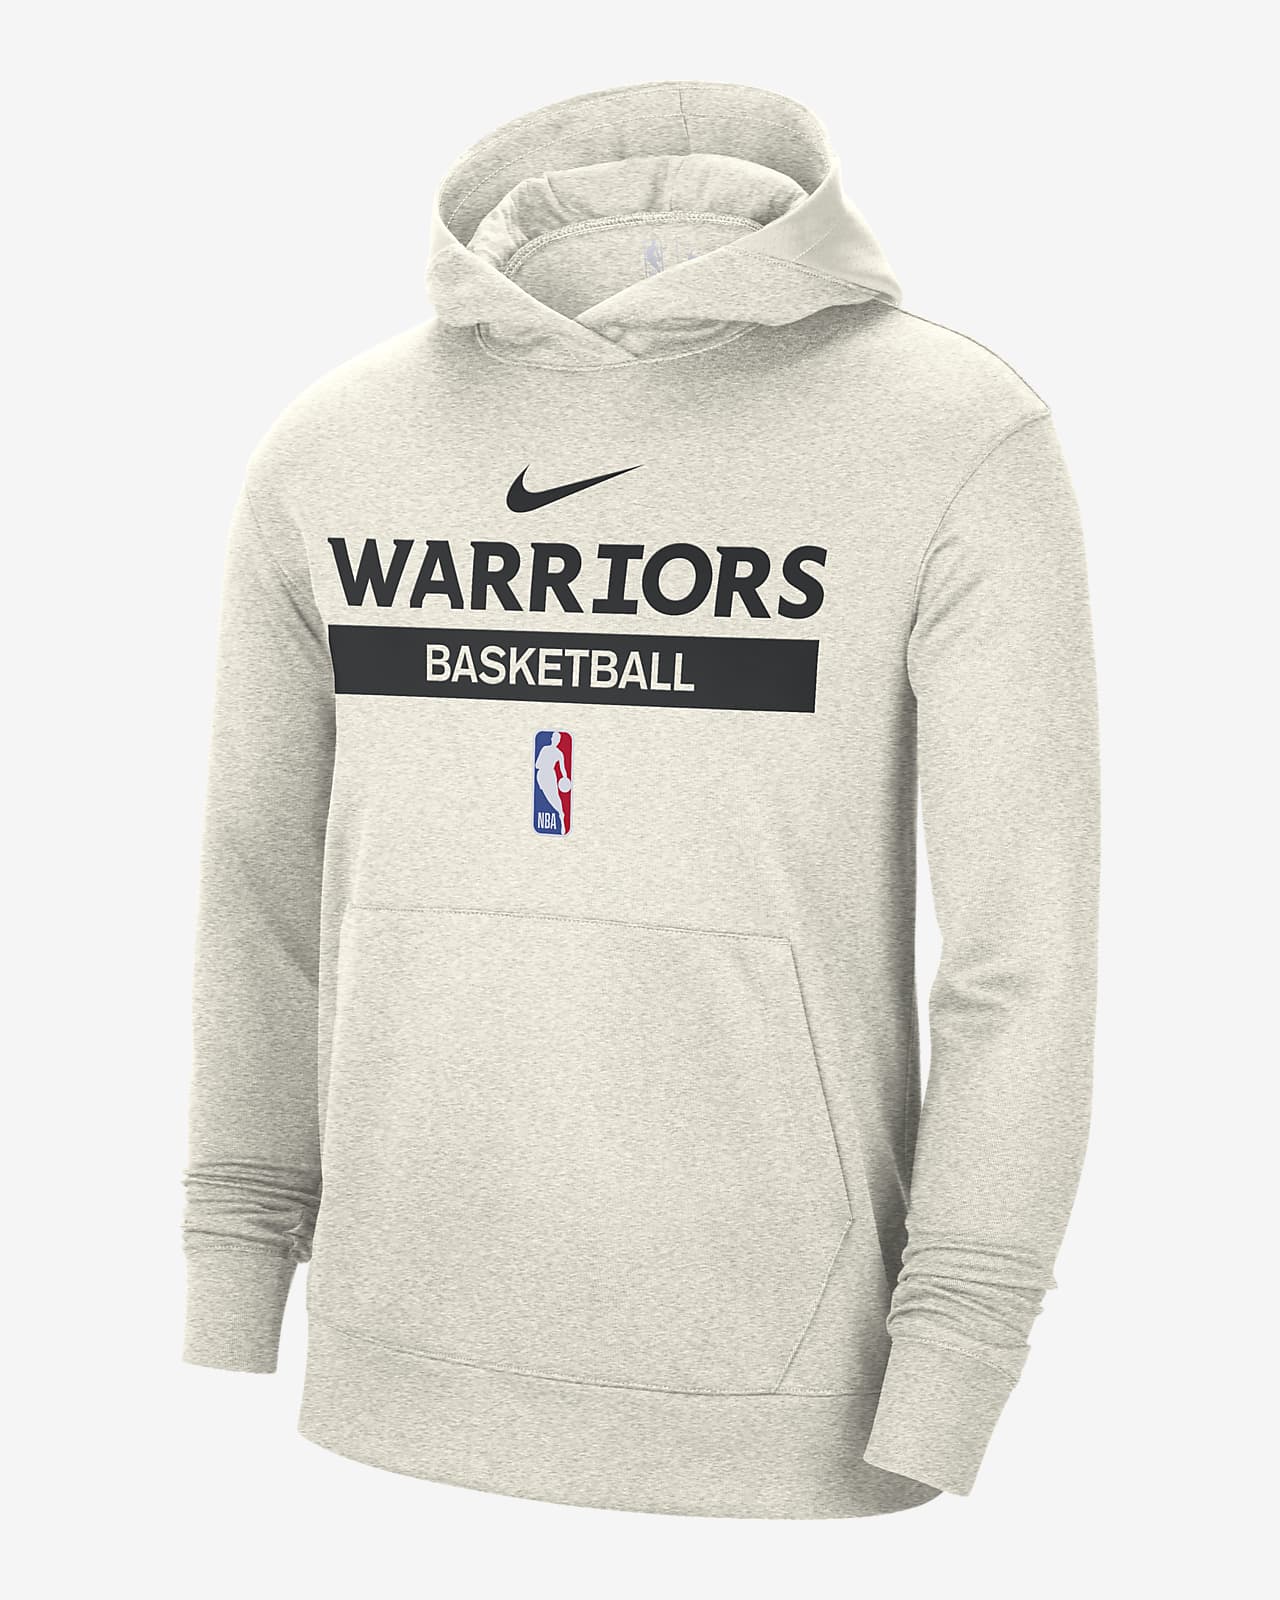 Sudadera con gorro cierre de la NBA hombre Nike Dri-FIT Golden State Warriors Spotlight. Nike.com